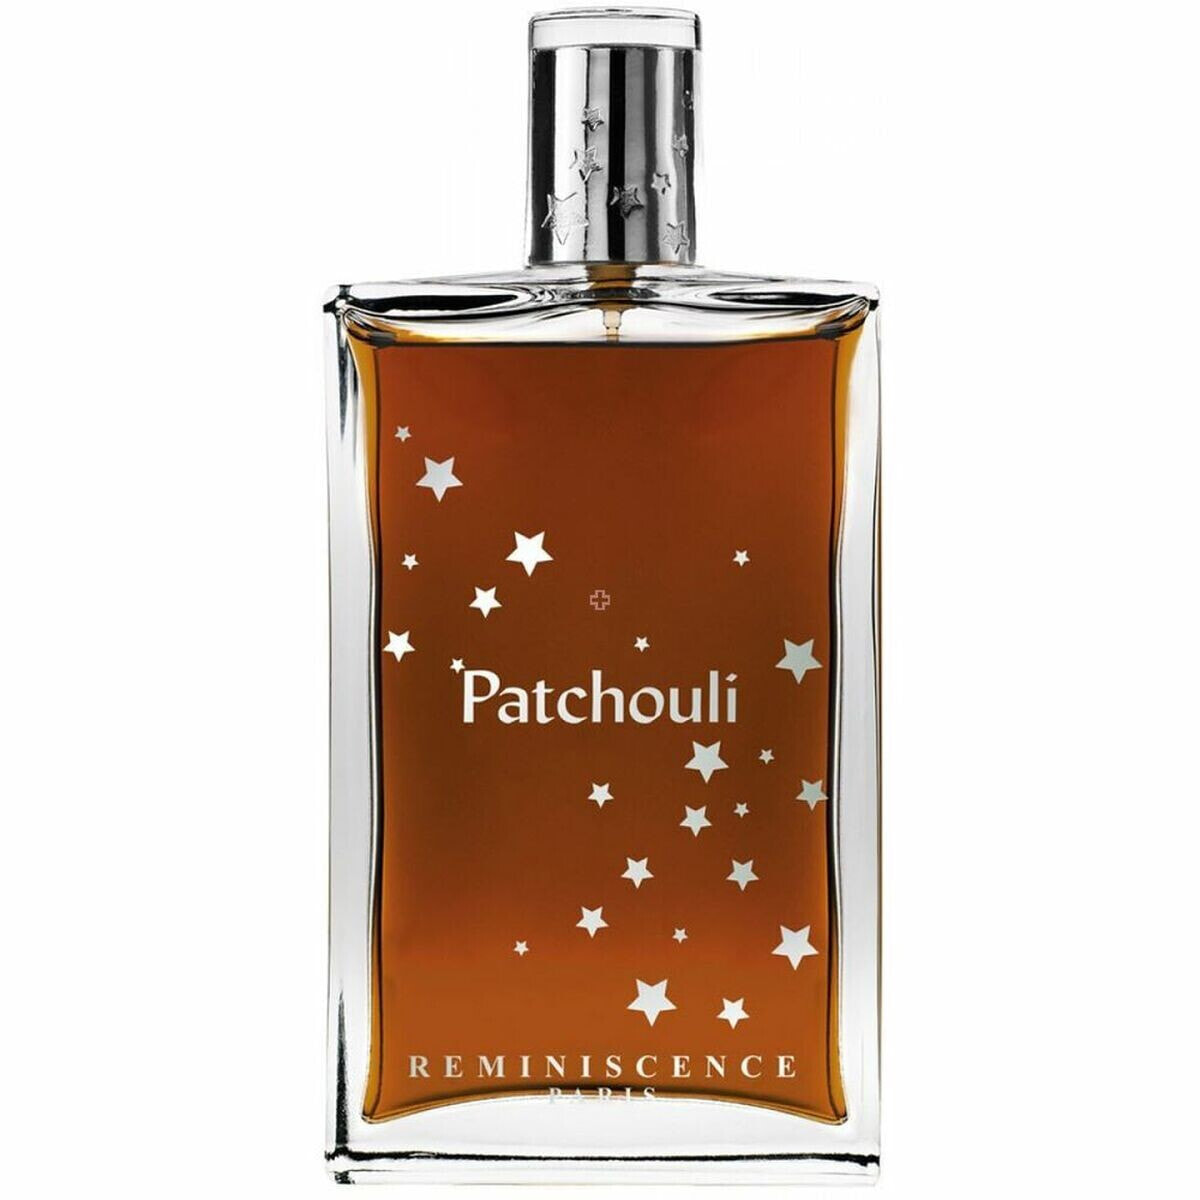 Women's Perfume Reminiscence EDT 50 ml